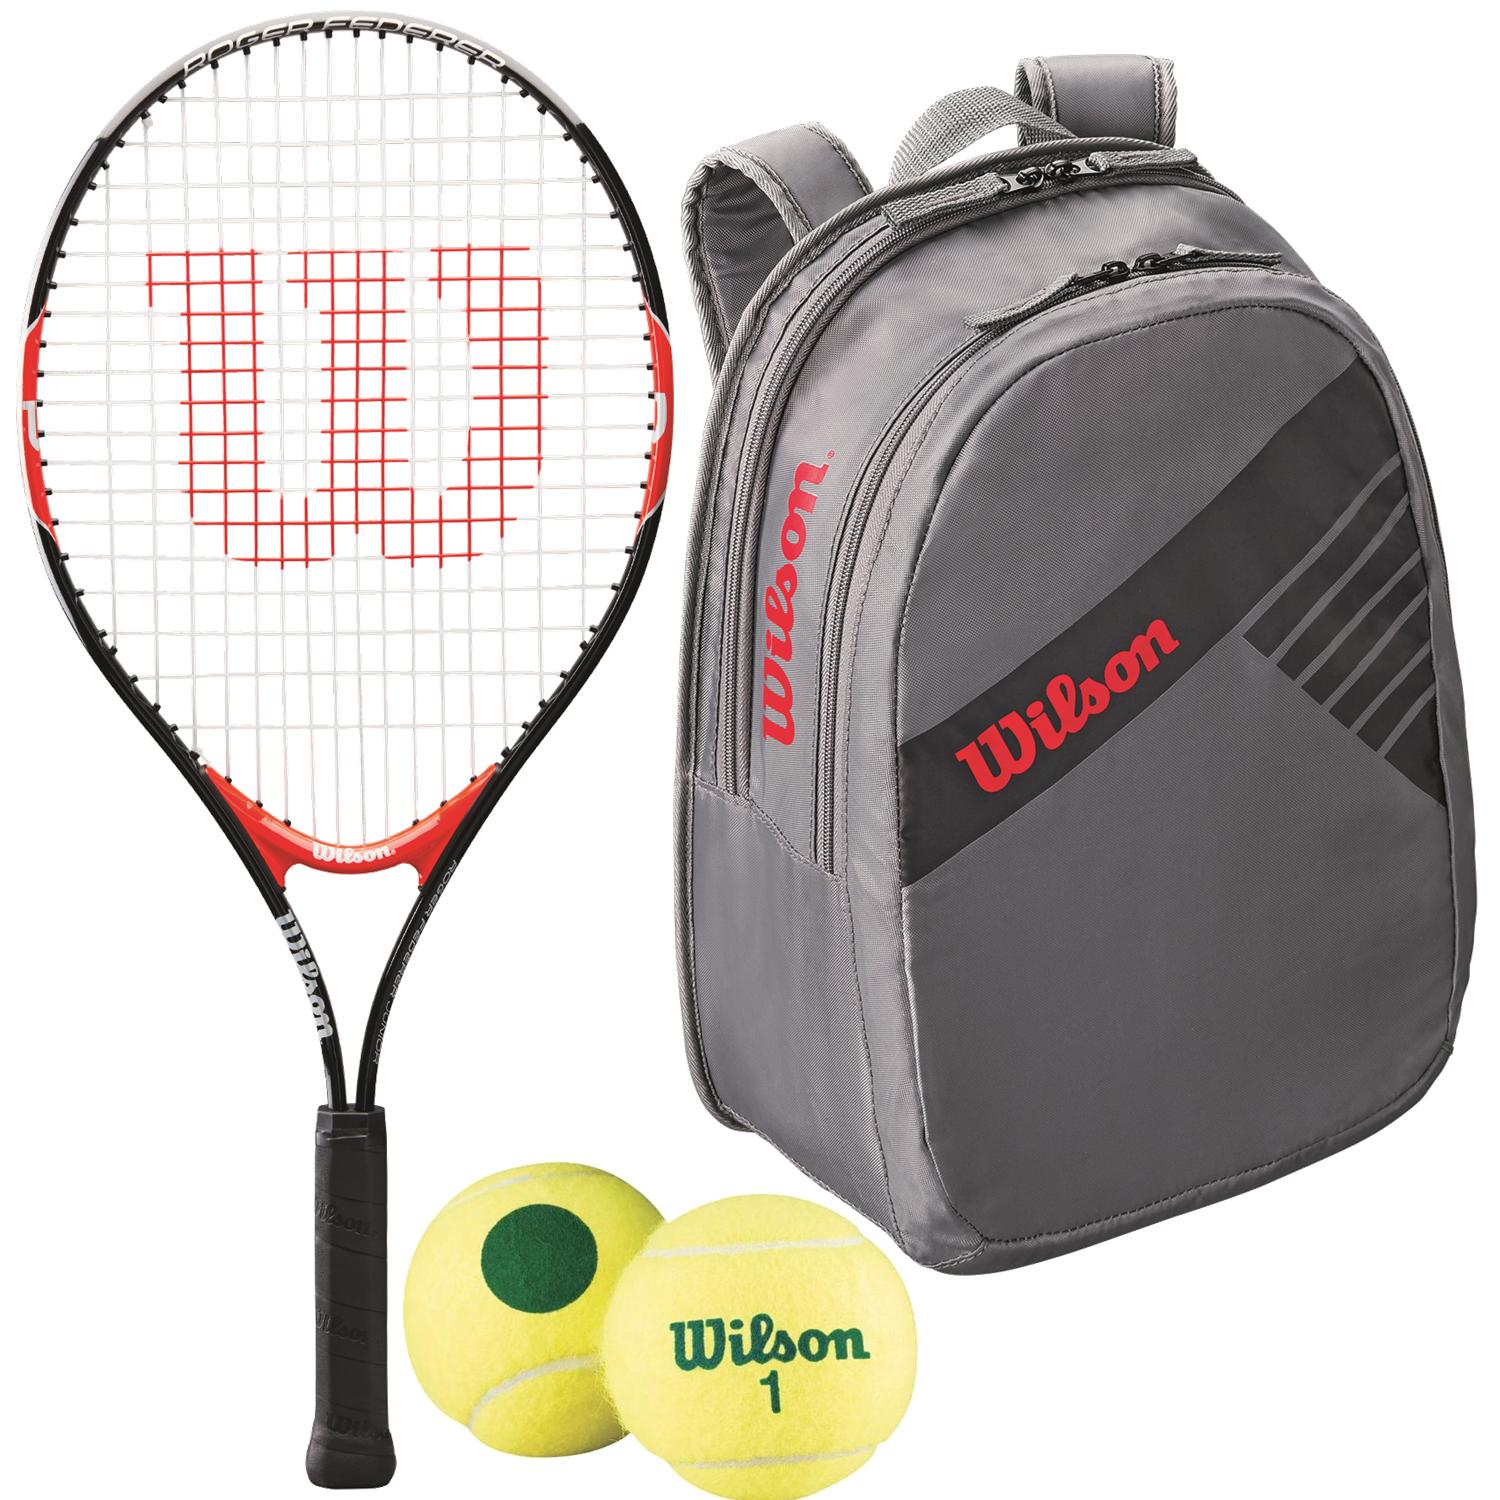 Wilson Roger Federer Junior Tennis Racquet, bundled with a Grey Junior Tennis Backpack and a 3-Pack of Green Dot Starter Tennis Balls